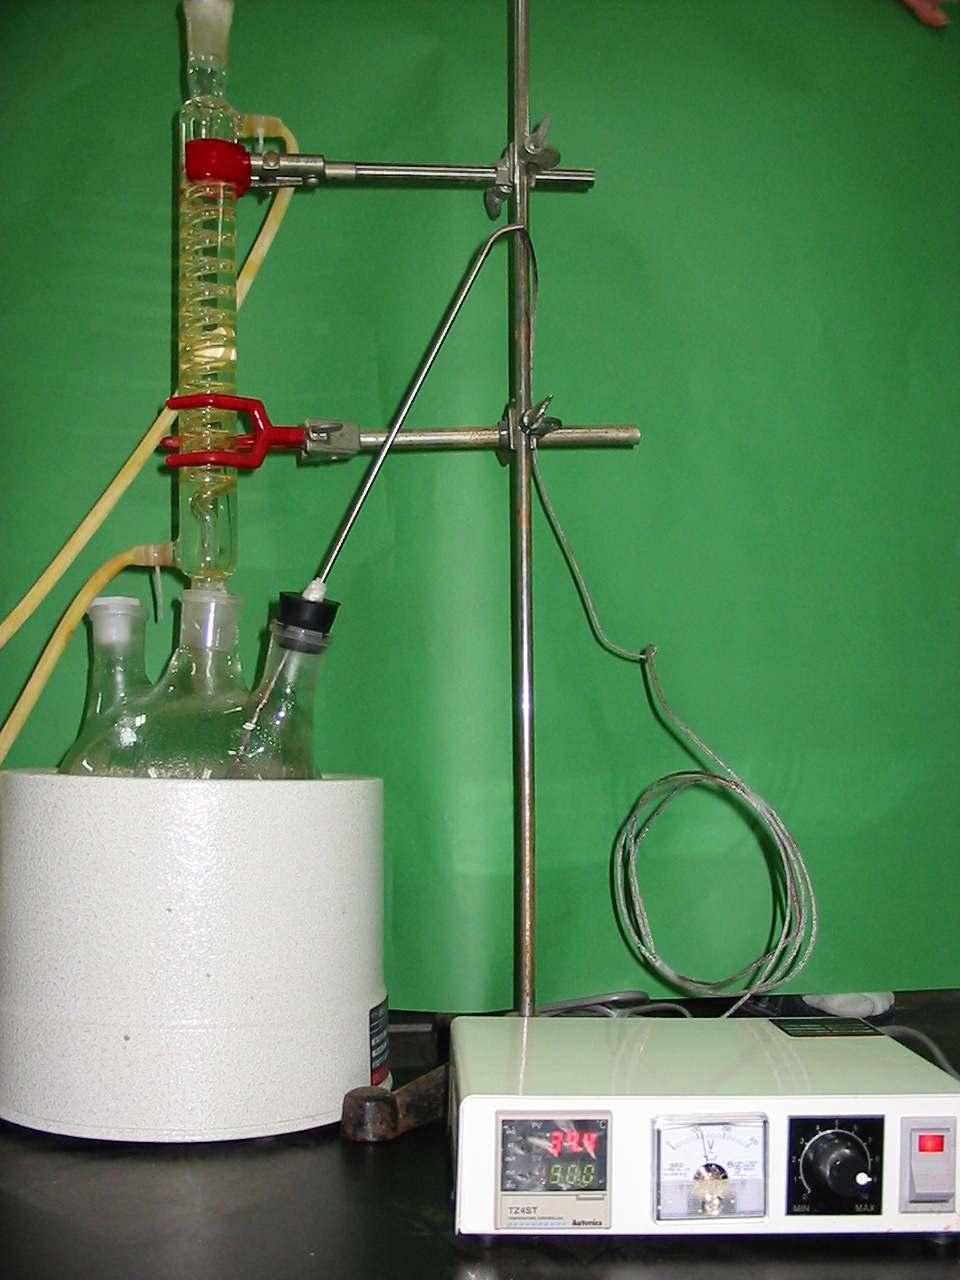 그림 2.2-5. The apparatus of extracts of Dendropanax morbifera by water : ethanol(2:8). ( 다) 용매추출법에의한황칠수액의엑스및용해도차이를이용한추출 황칠나무에서얻은수지액은우유빛깔의액을분비하는데공기중에서산화하여 점차노란색으로변한다. 이렇게얻은황칠수지액의엑스추출은그림 2.